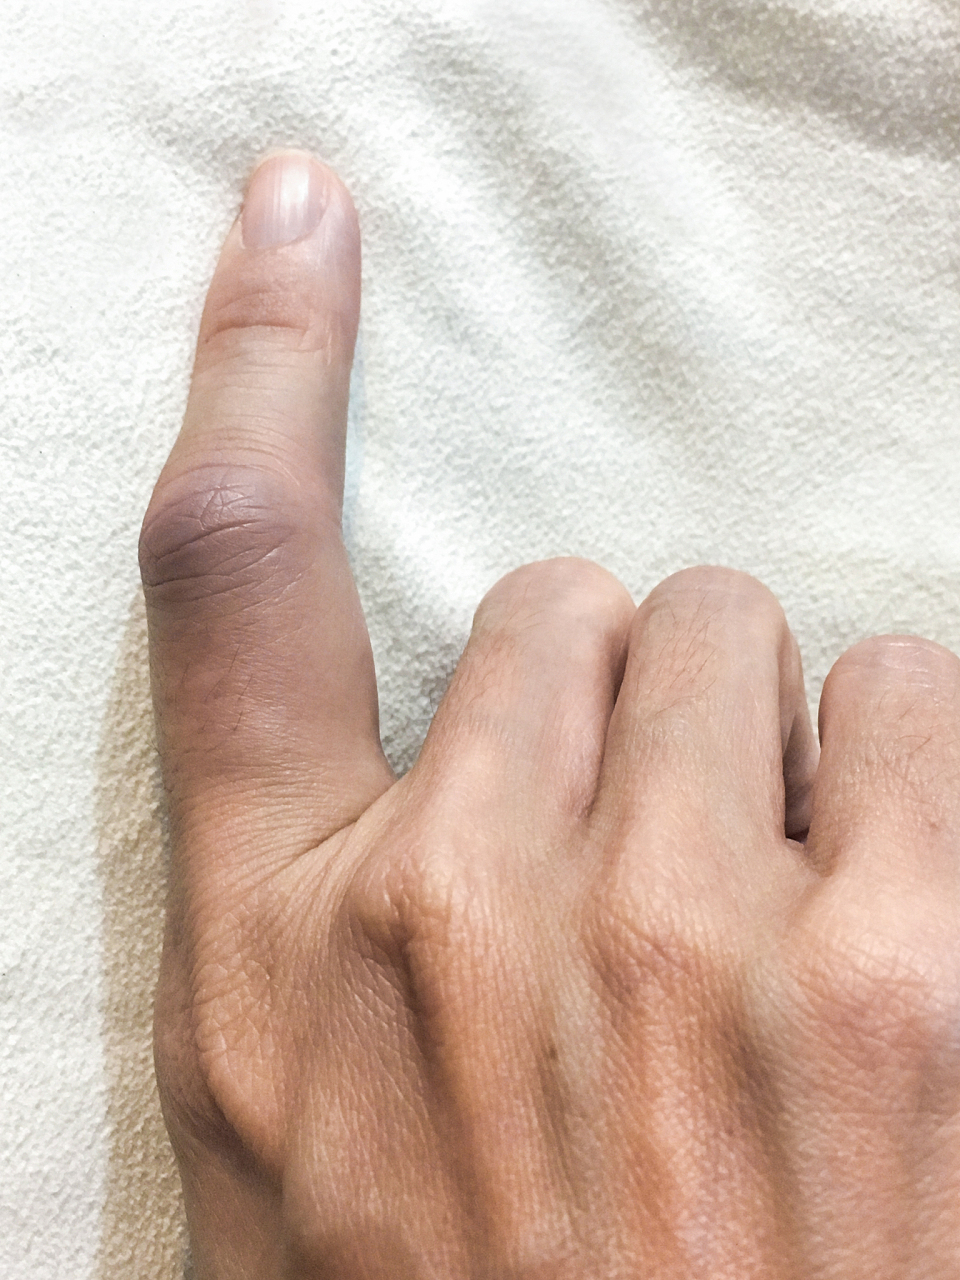 氢氟酸烧伤手指肿胀图片